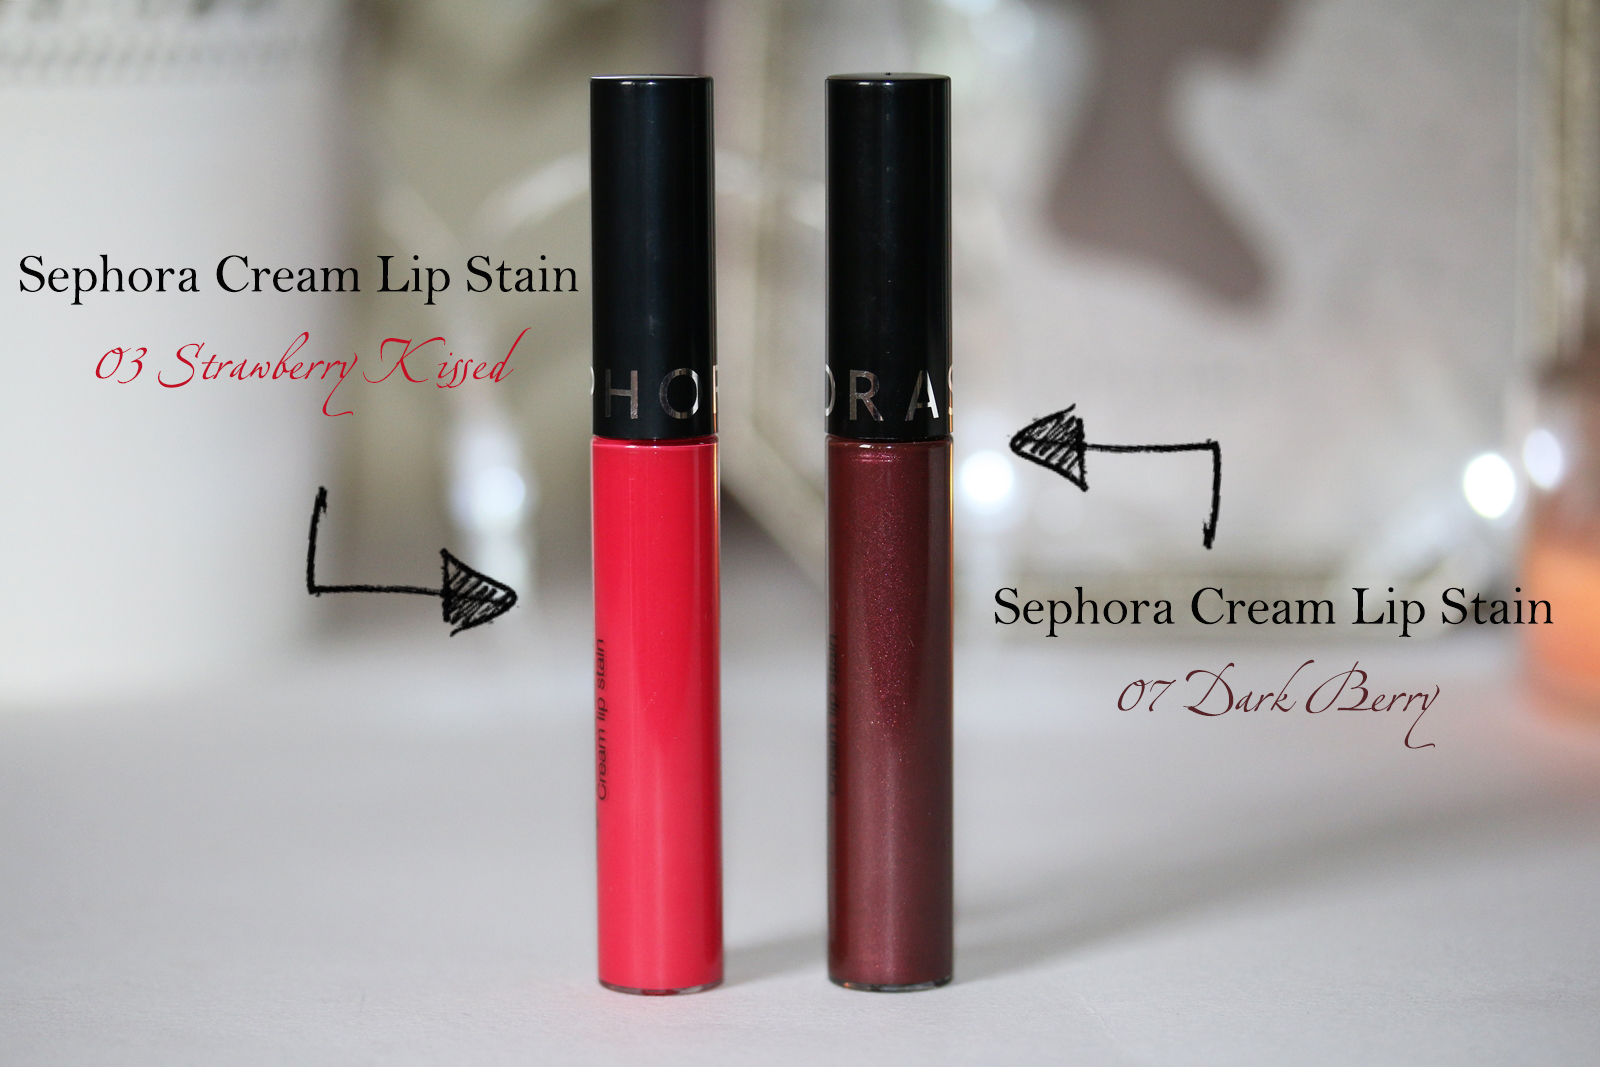 Sephora Cream Lip Stain 07 Dark Berry